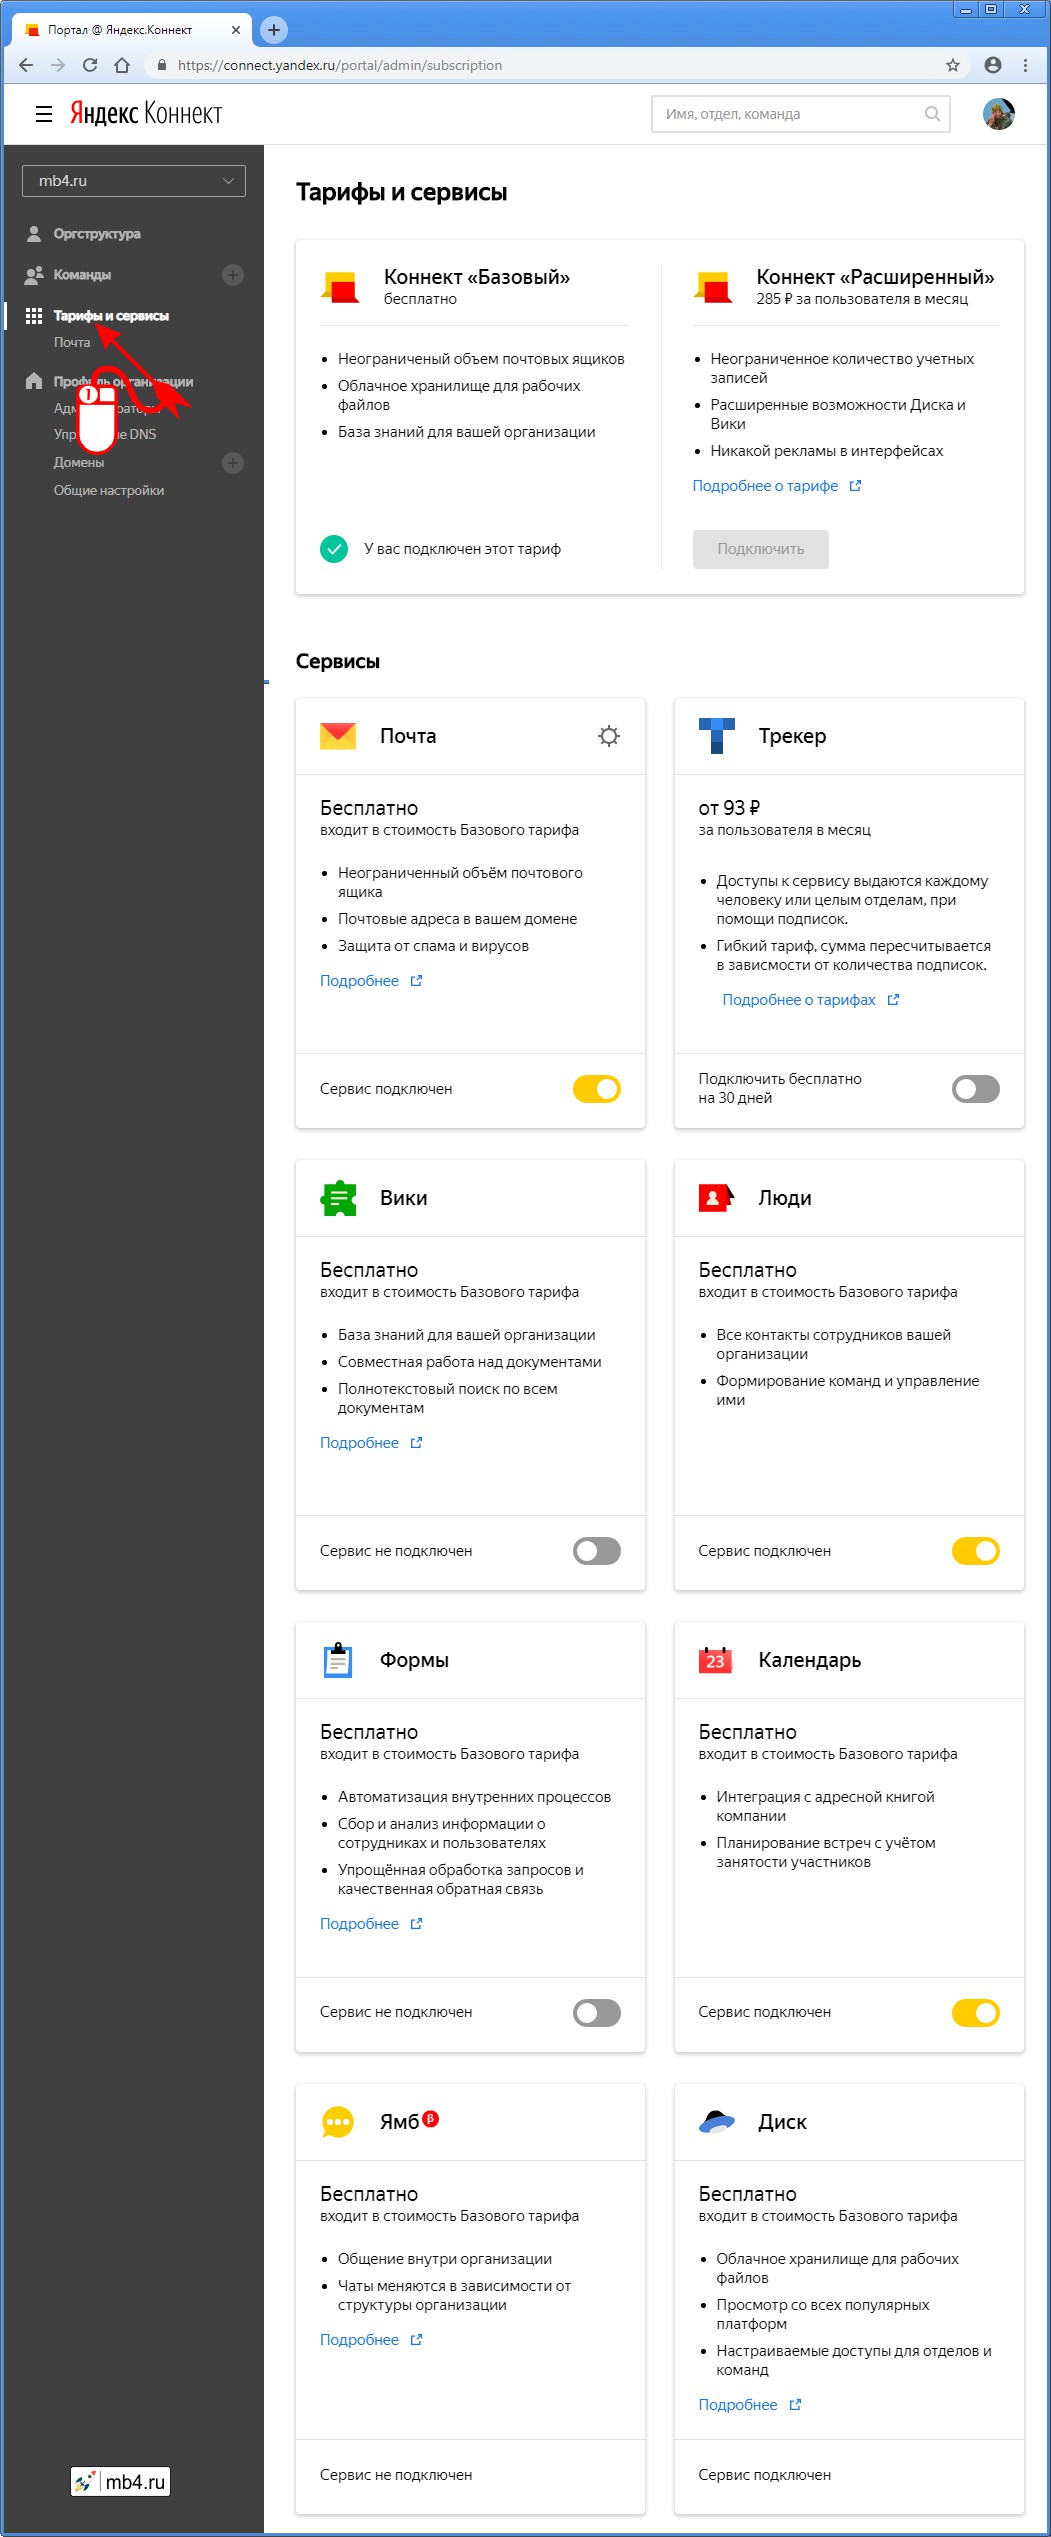 Внешний вид страницы «Тарифы и сервисы» Яндекс.Коннекта